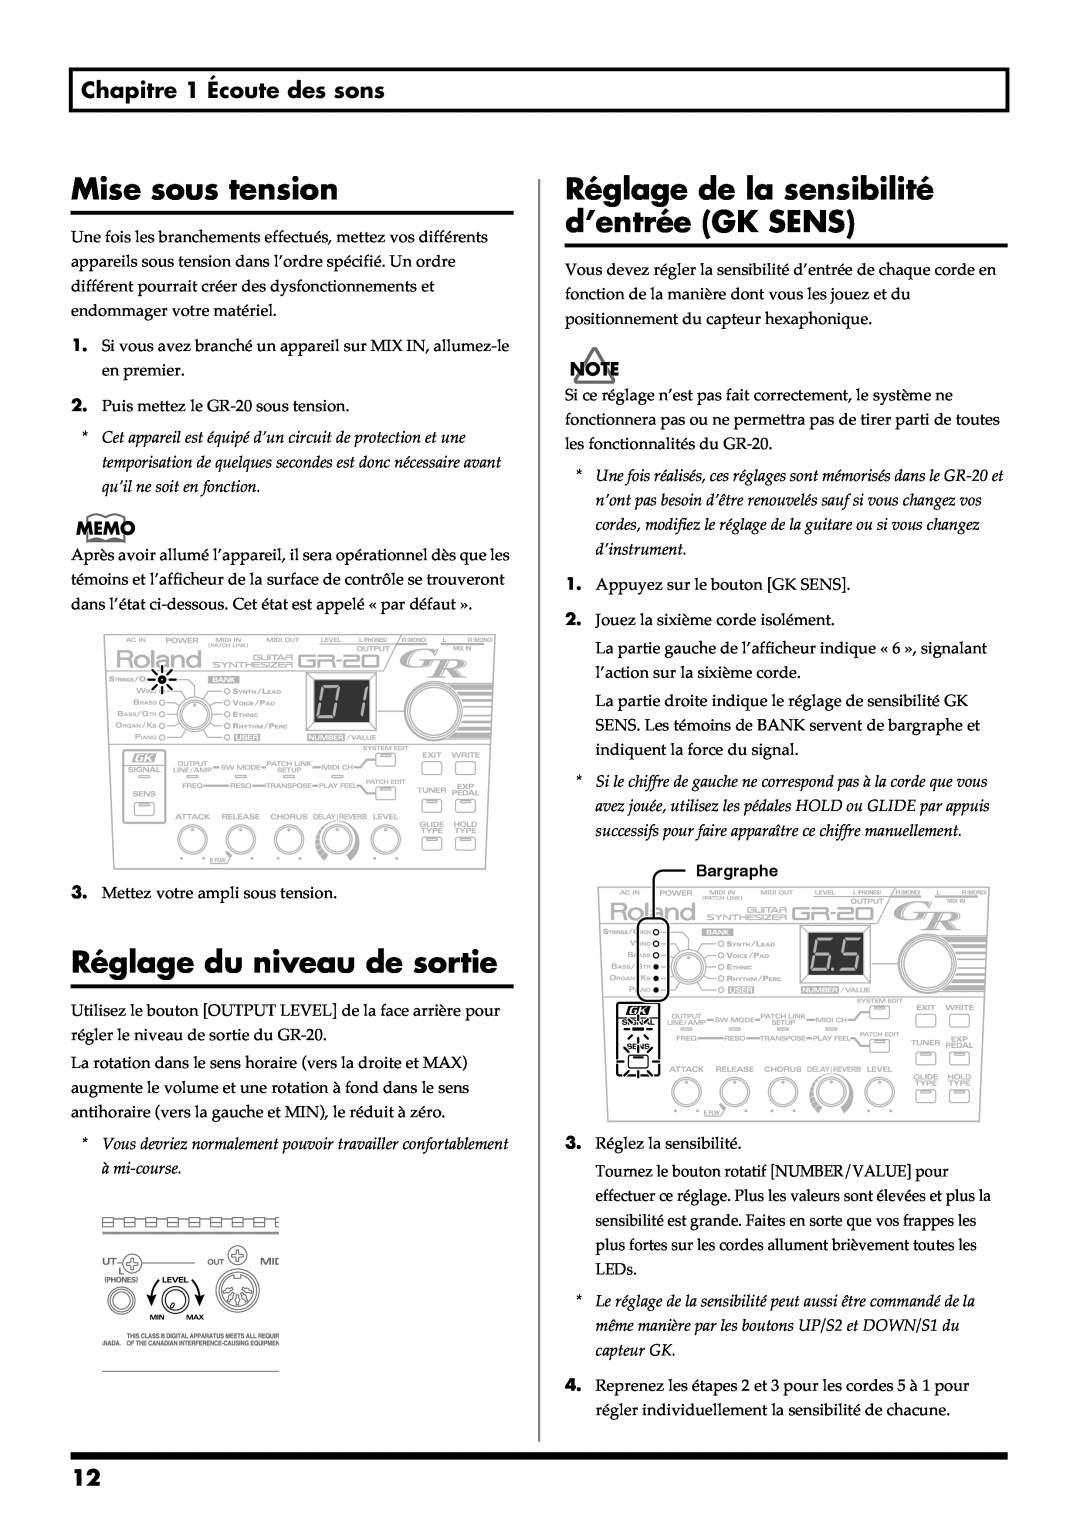 Roland GR-20 manual Mise sous tension, Réglage du niveau de sortie, Réglage de la sensibilité d’entrée GK SENS 